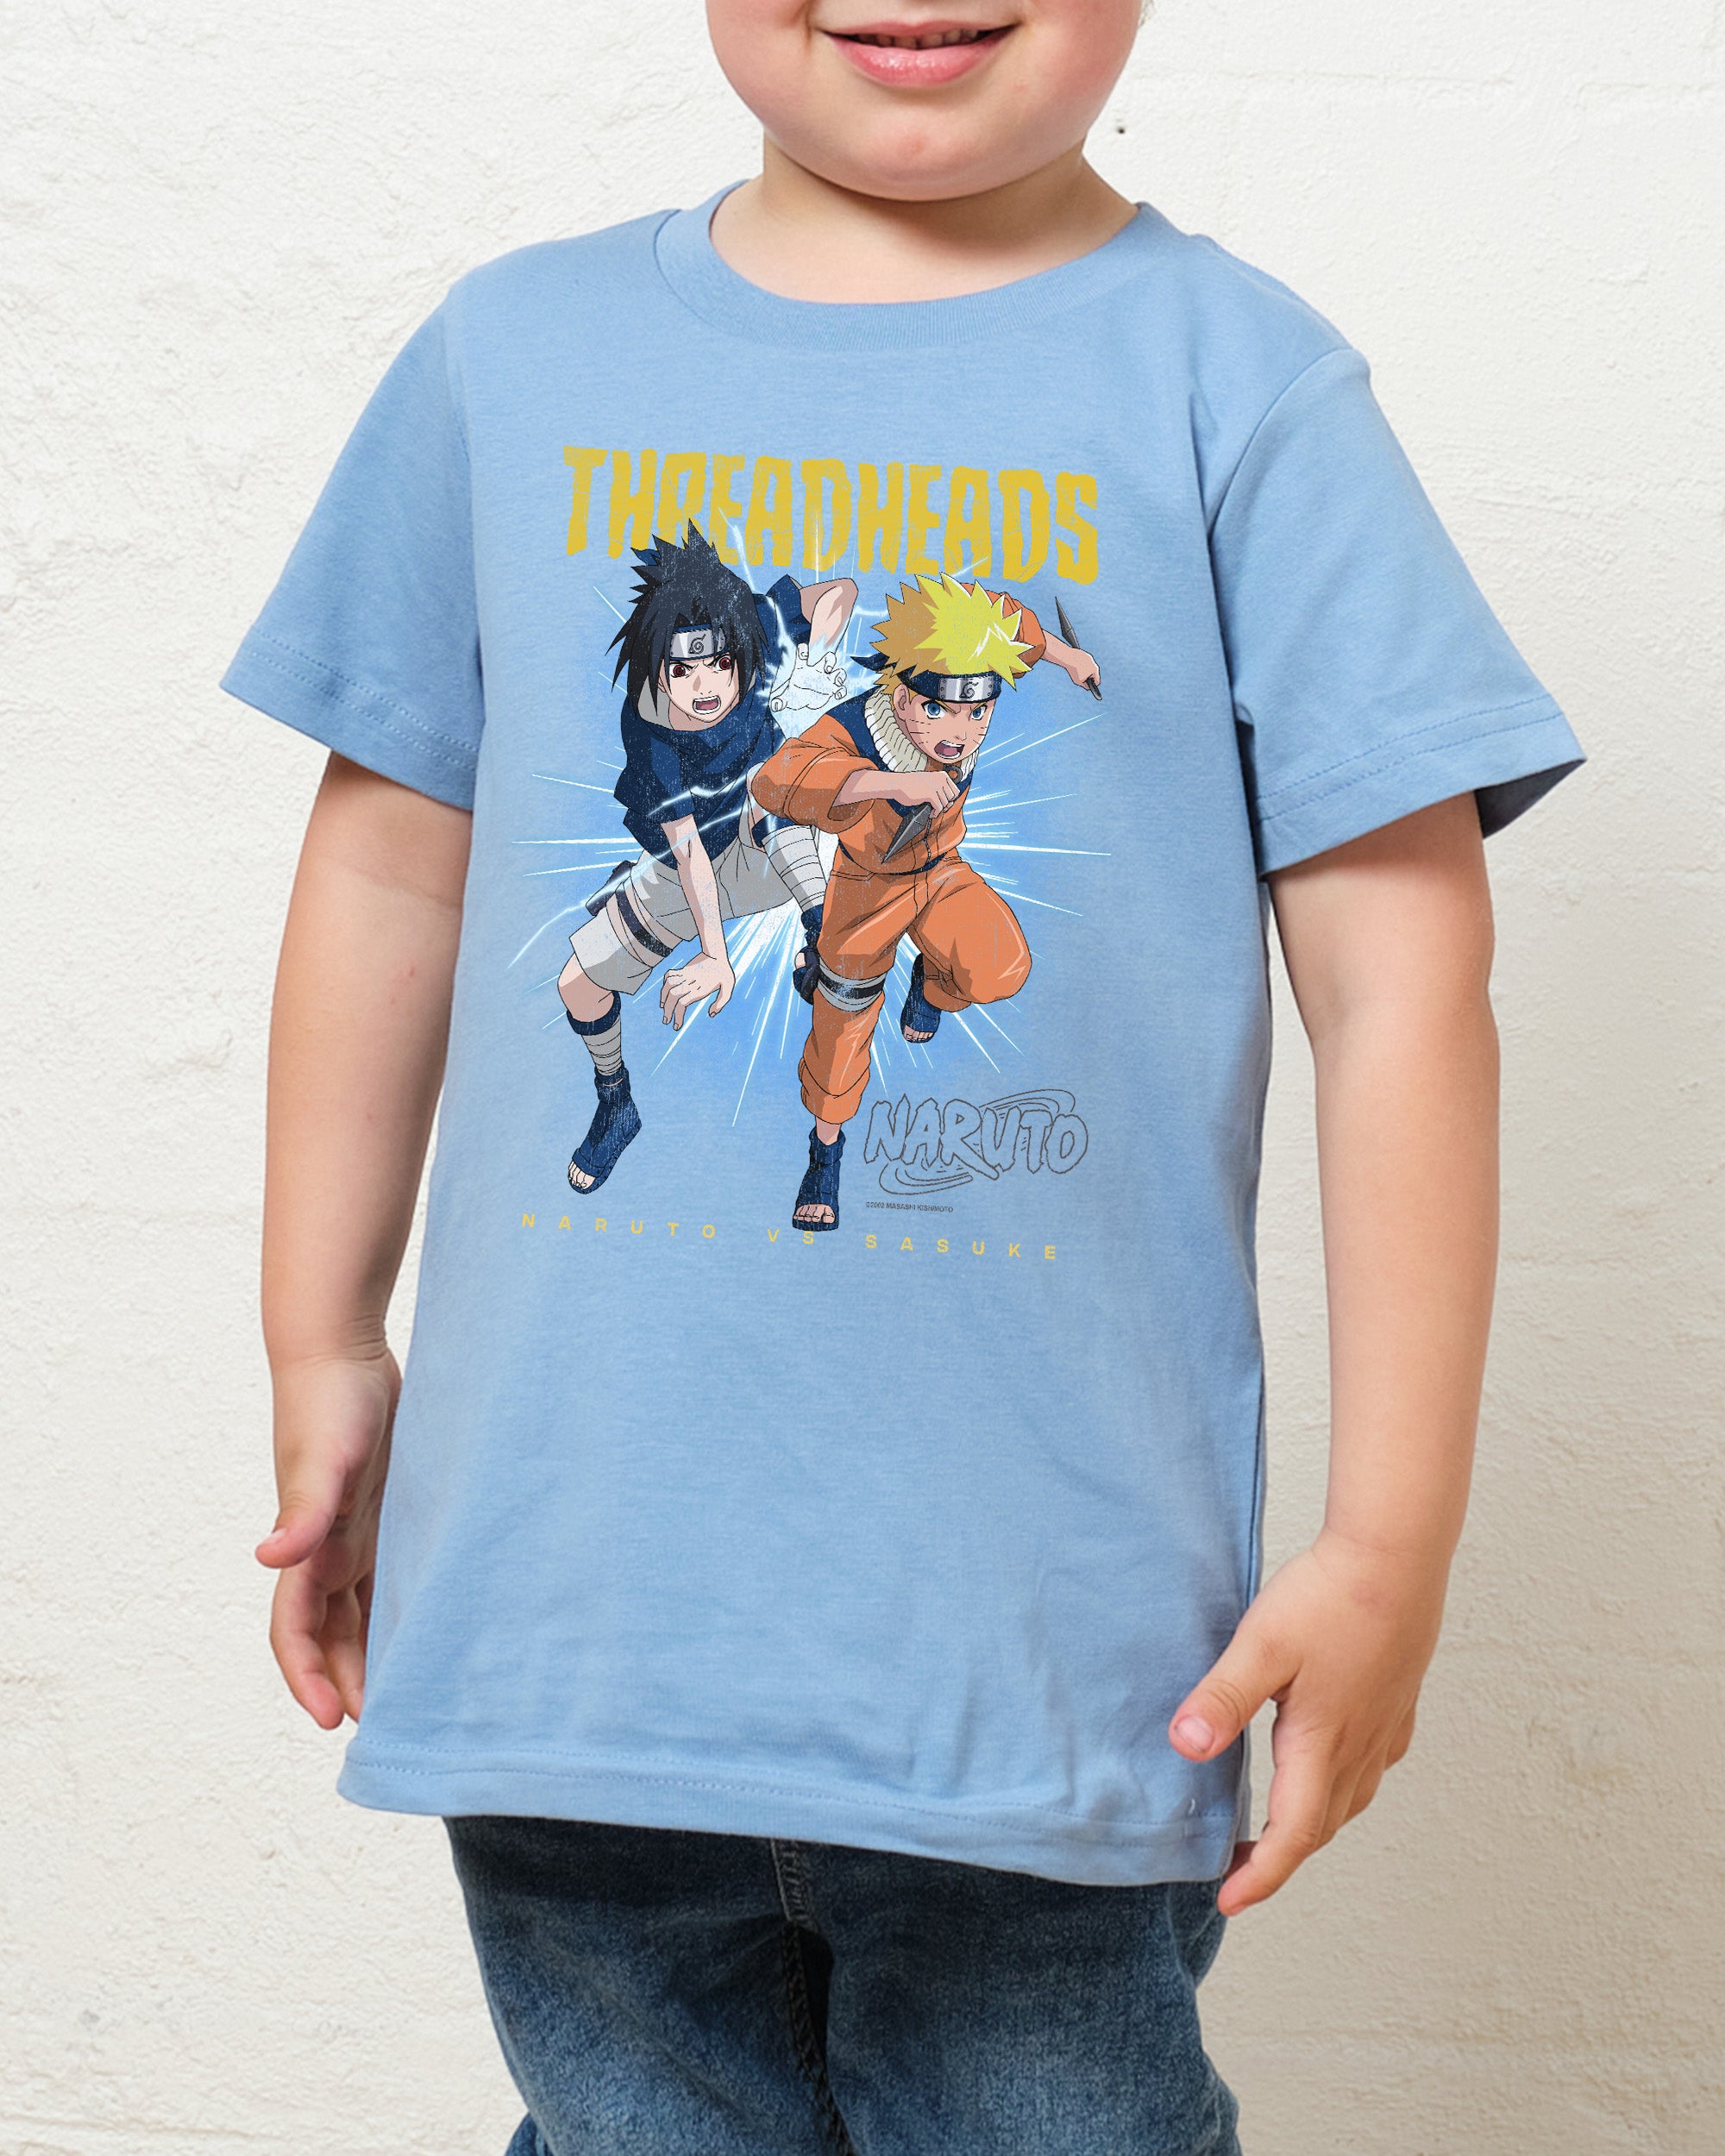 Naruto vs Sasuke Kids T-Shirt